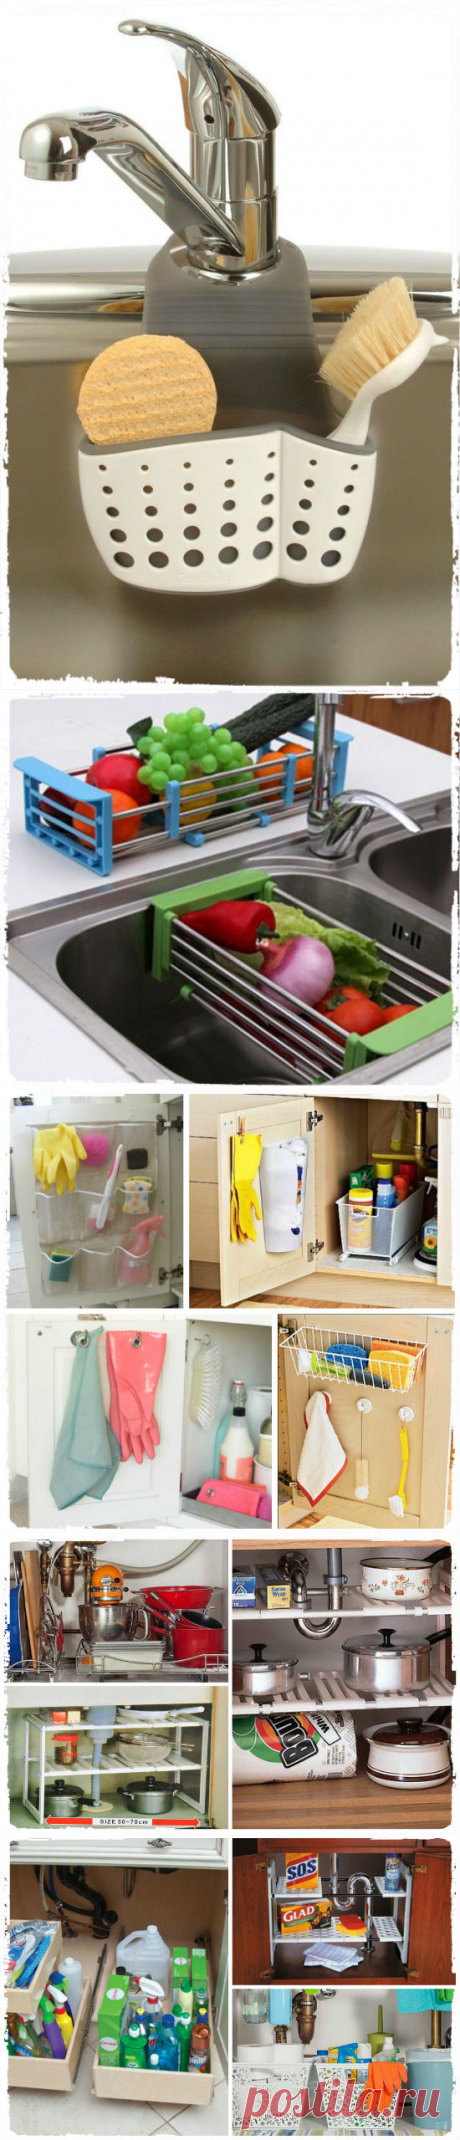 Организация мойки на кухне, места под раковиной и хранение посуды